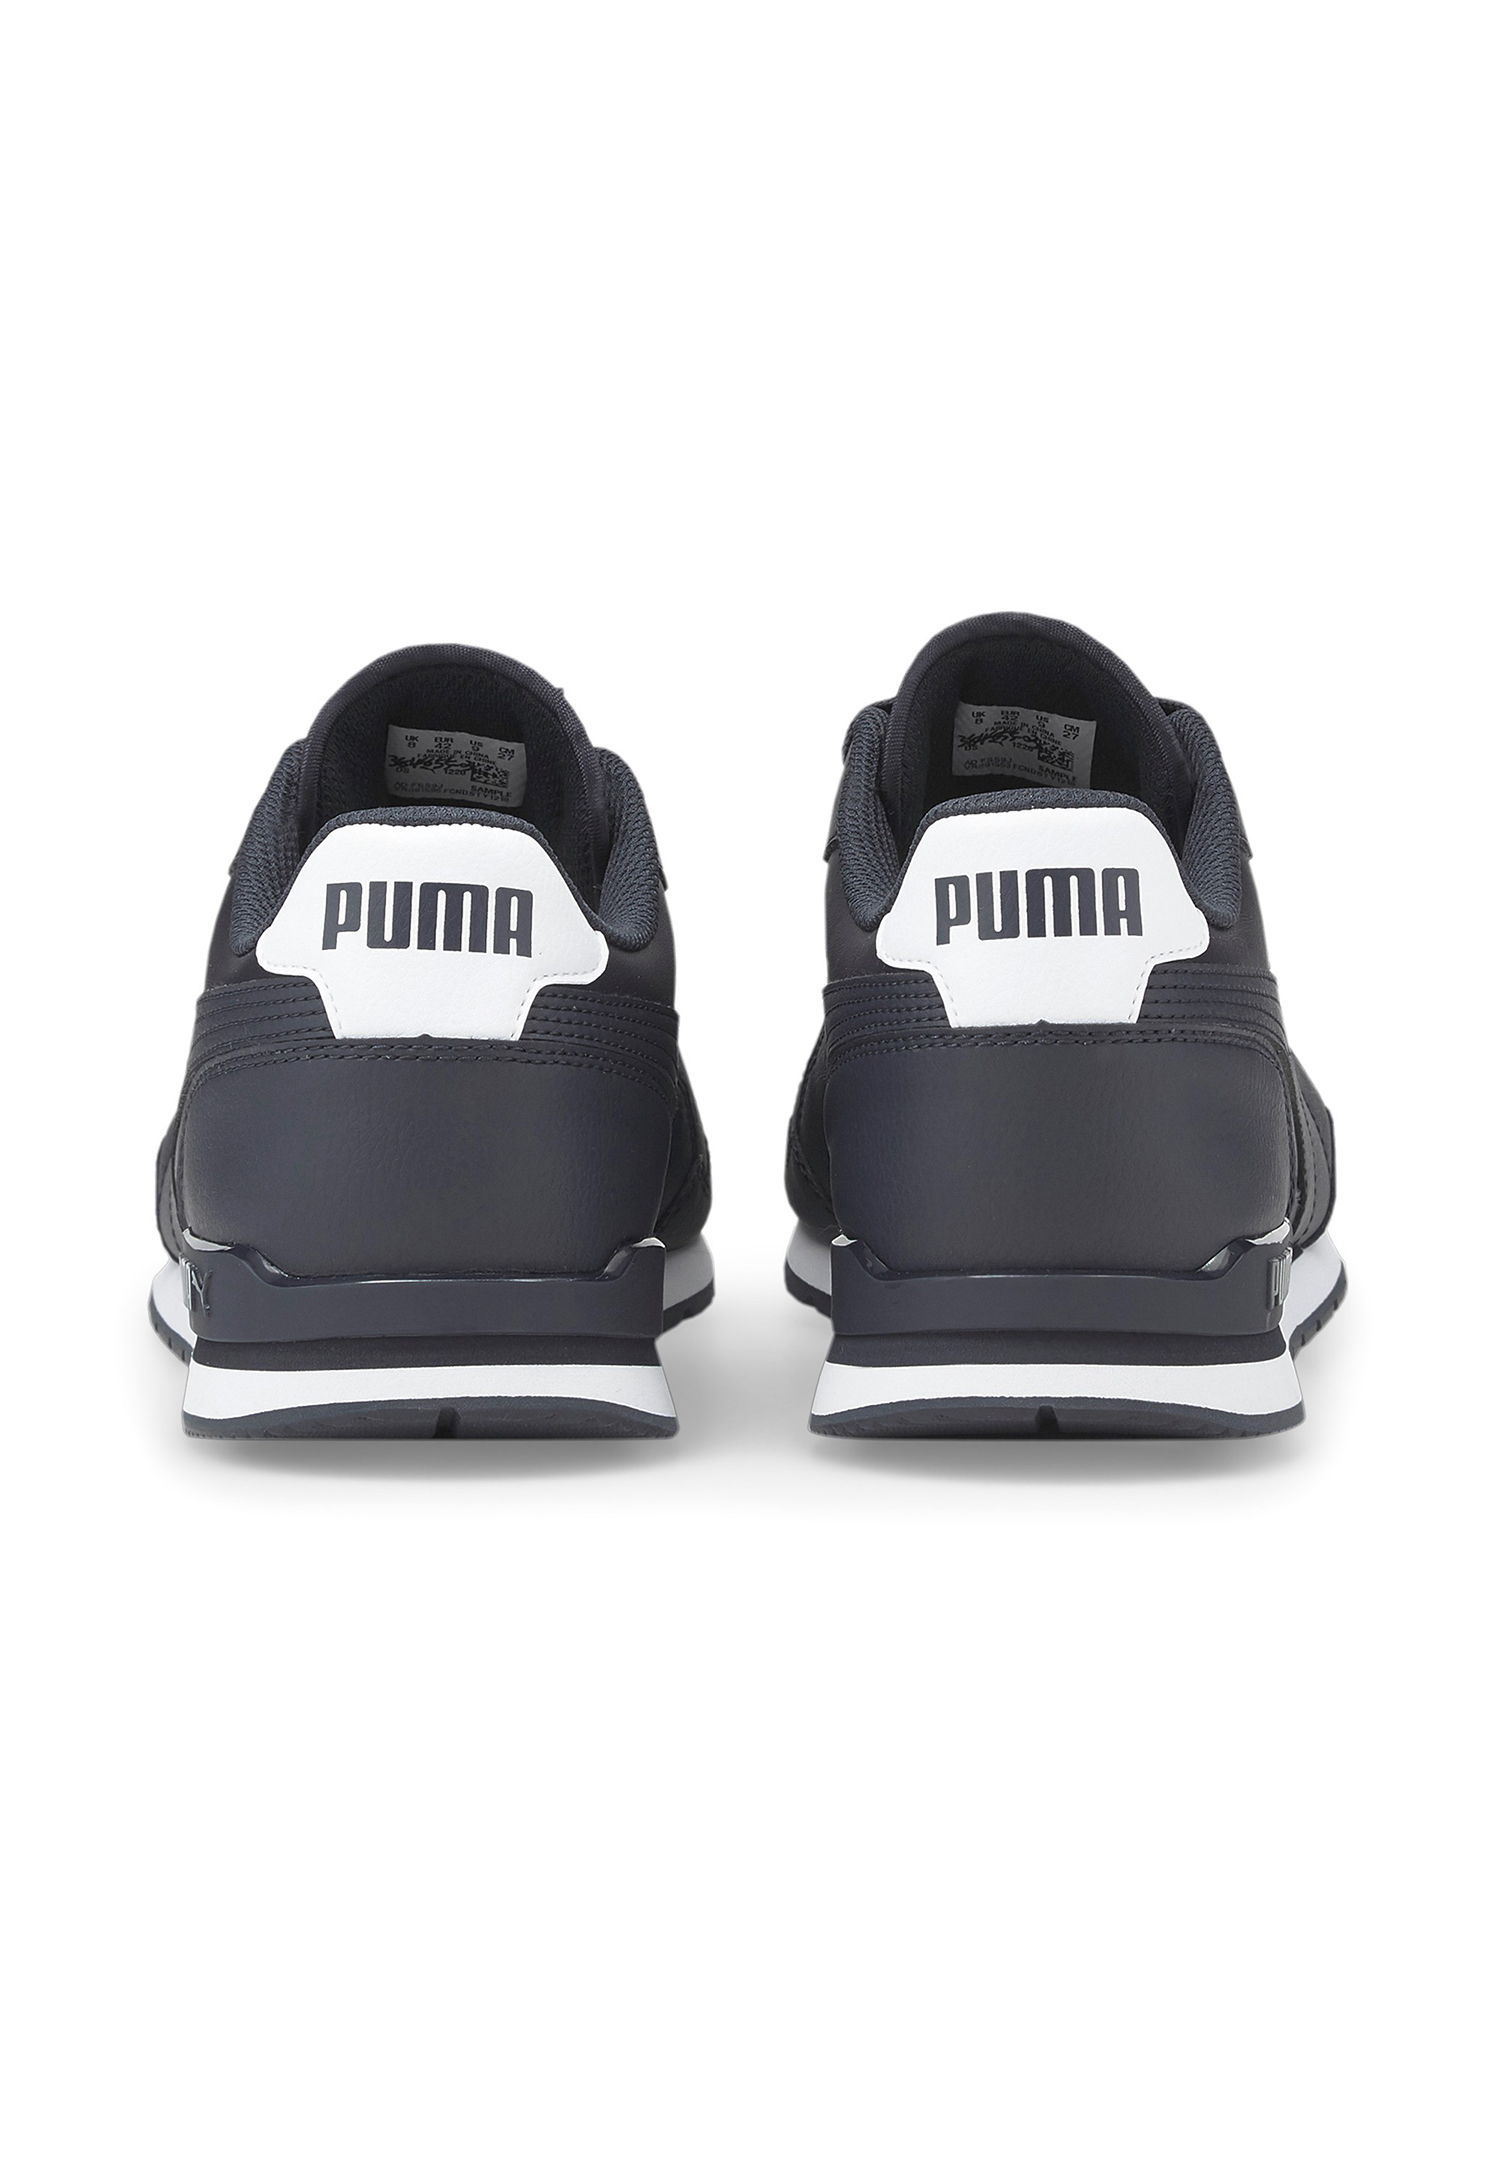 Puma ST Runner v3 Full L Unisex Sneaker Turnschuhe 384855 03 blau